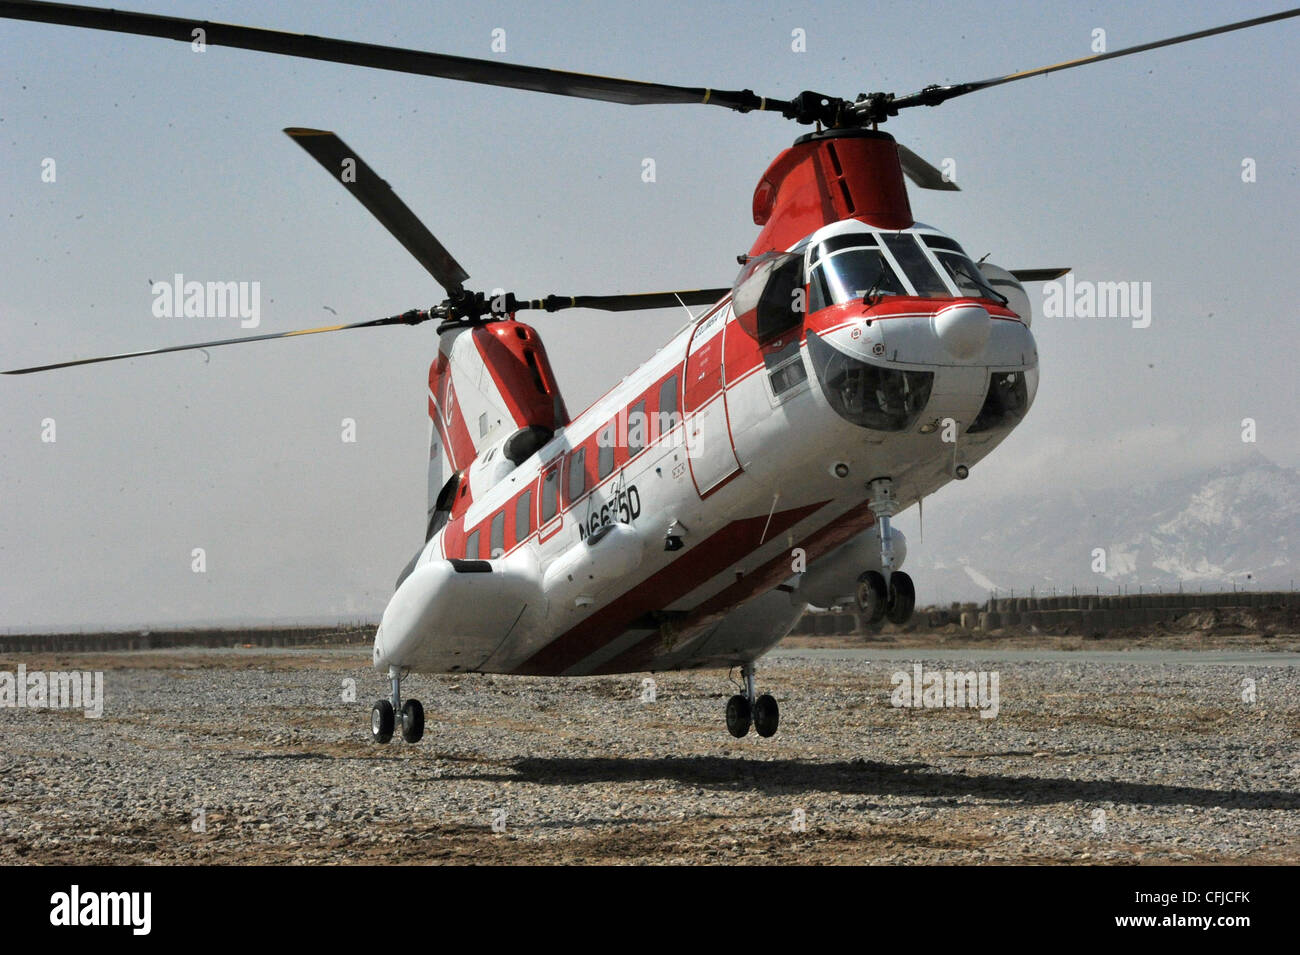 Un elicottero CH-47 Chinook arriva per il prelievo e il rientro del personale alla base operativa Forward Warrior, distretto di Gelan, provincia di Ghazni, Afghanistan, marzo 14. Gli elicotteri forniscono un mezzo efficiente e affidabile per trasportare personale e merci nelle zone rurali dell'Afghanistan. Foto Stock